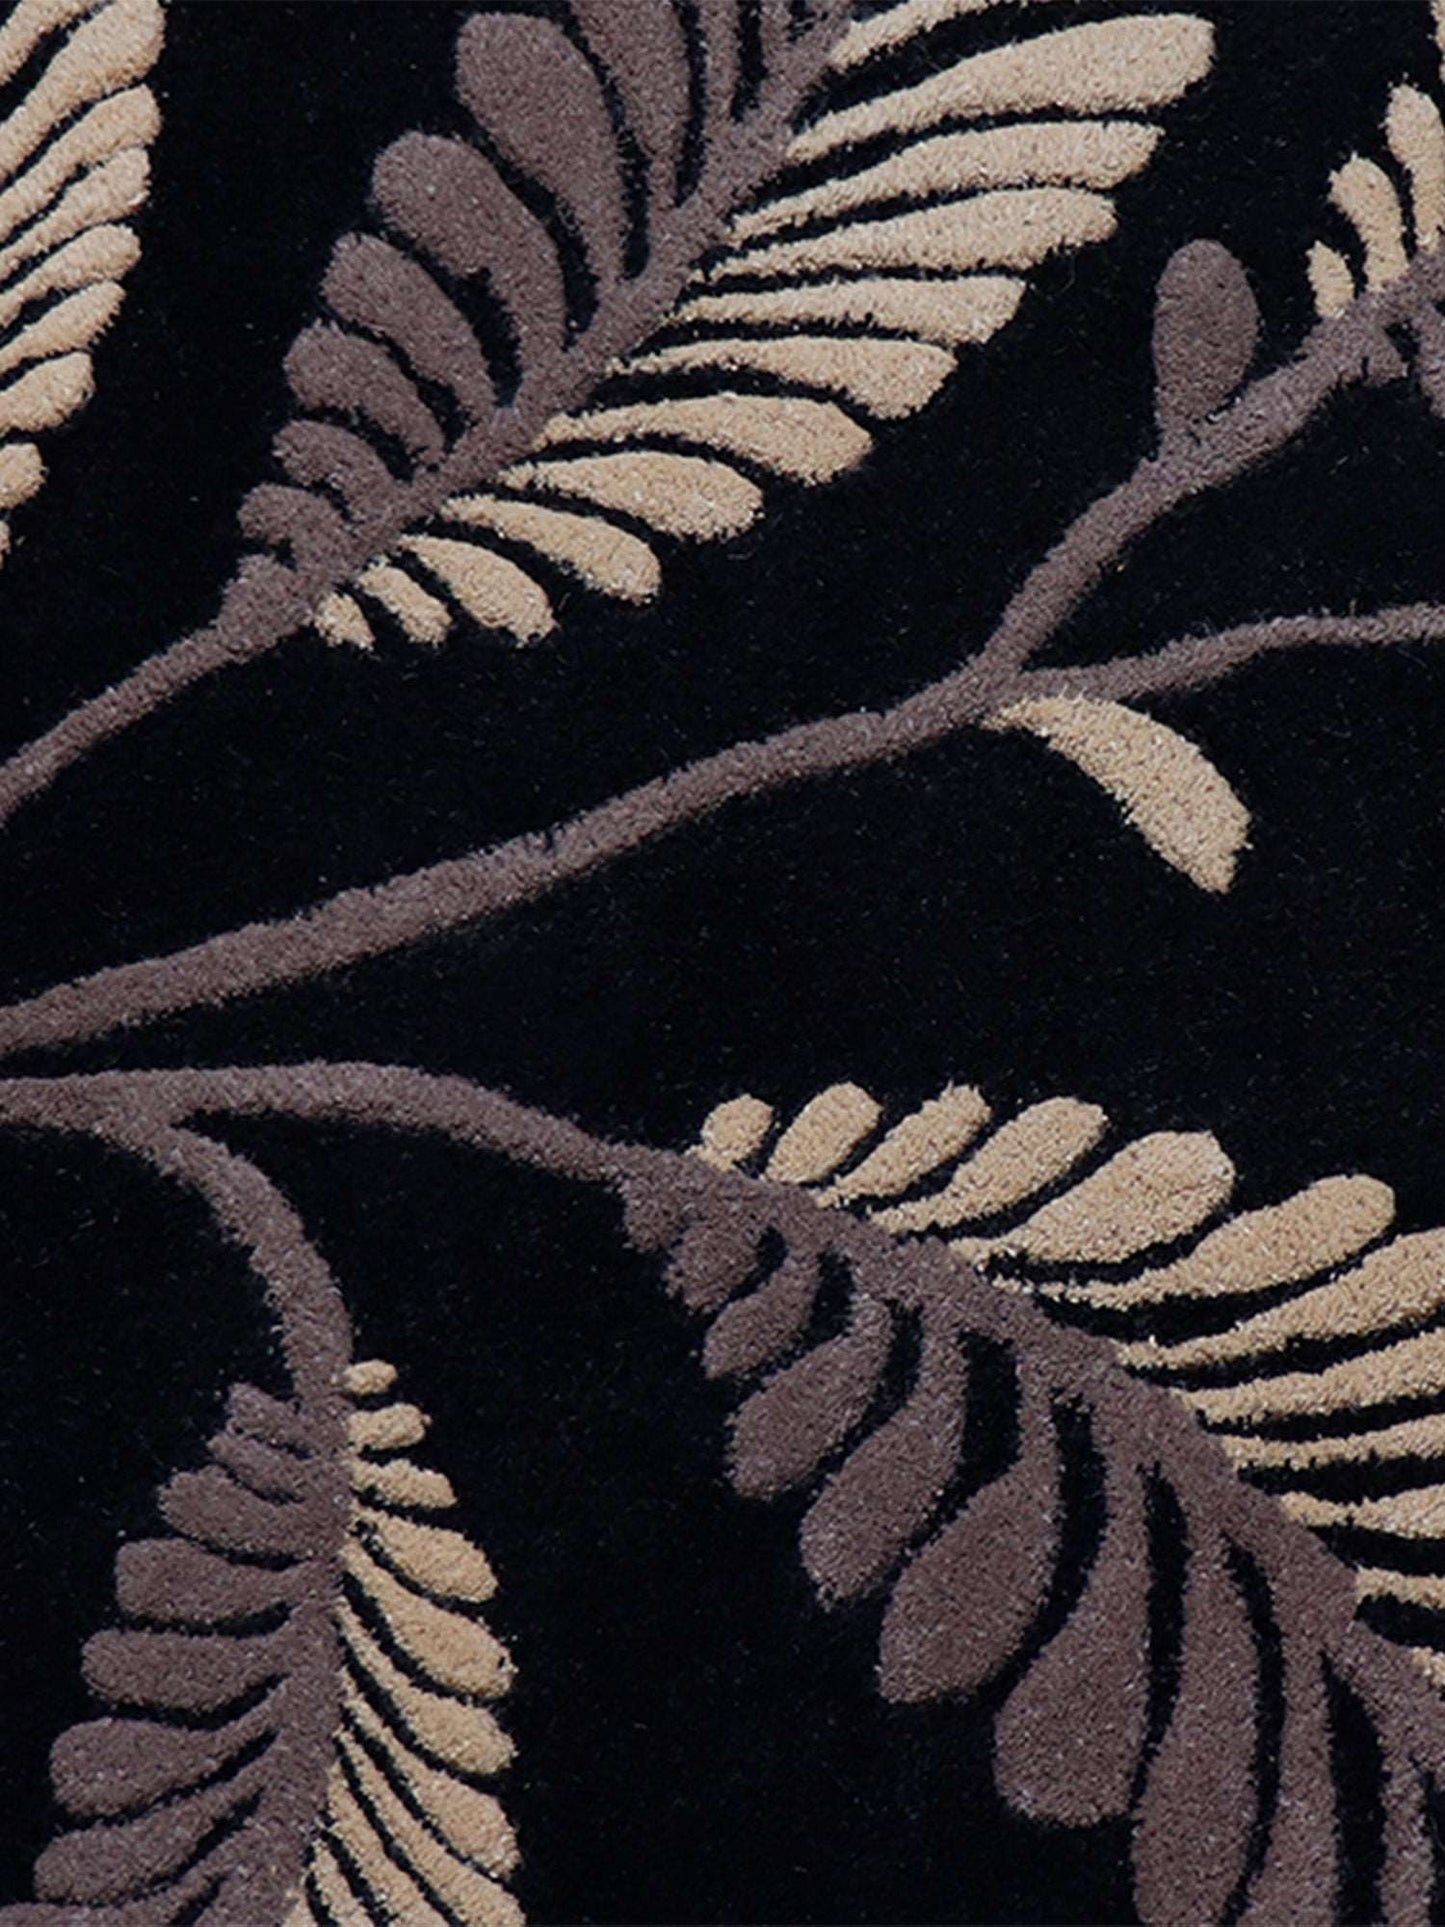 Carpet Hand Tufted 100% Woollen Leaf Black Beige - 4ft X 6ft